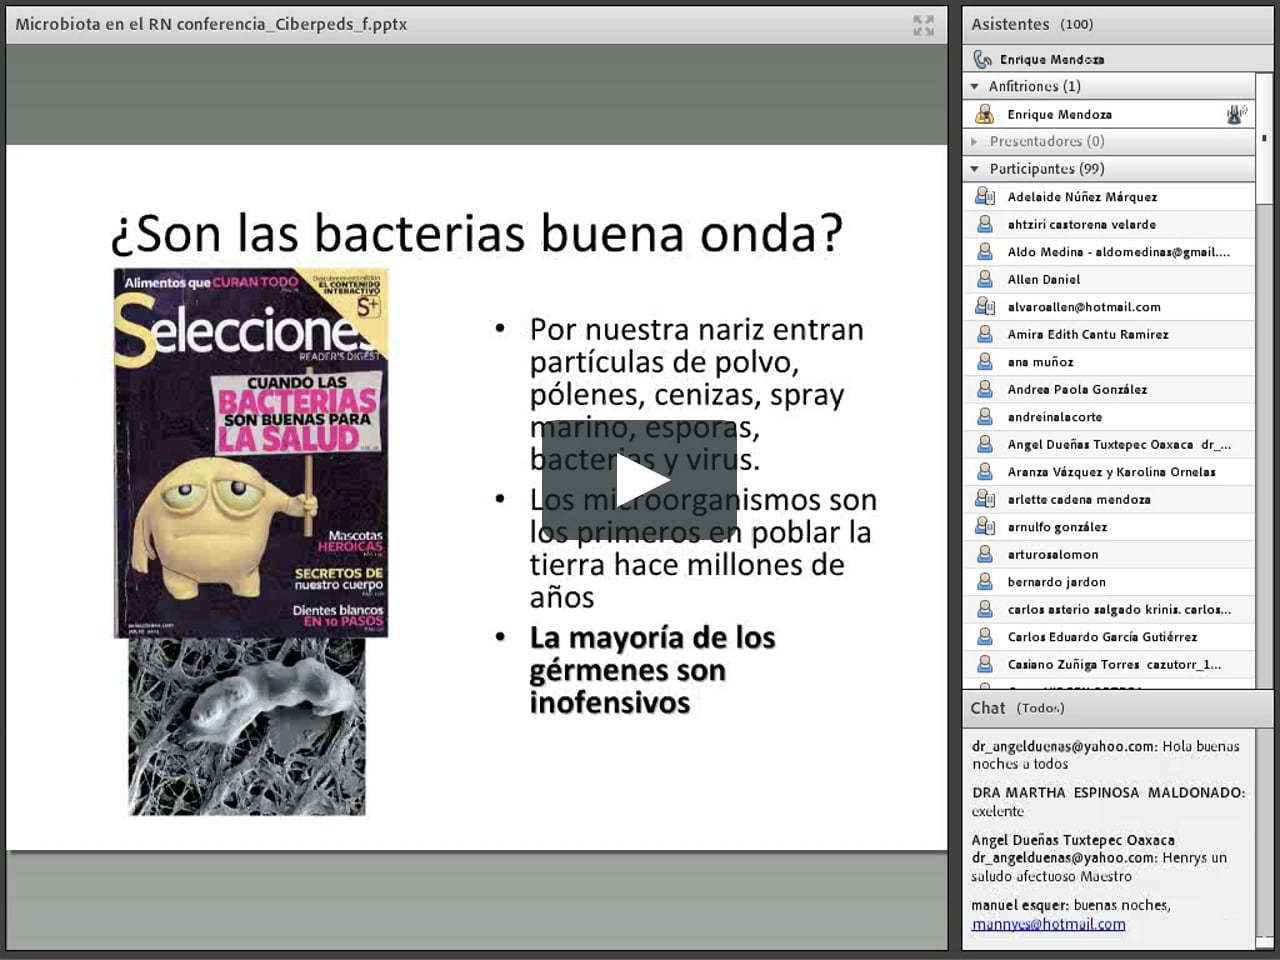  Microbiota en el Recien nacido 0 0 on Vimeo